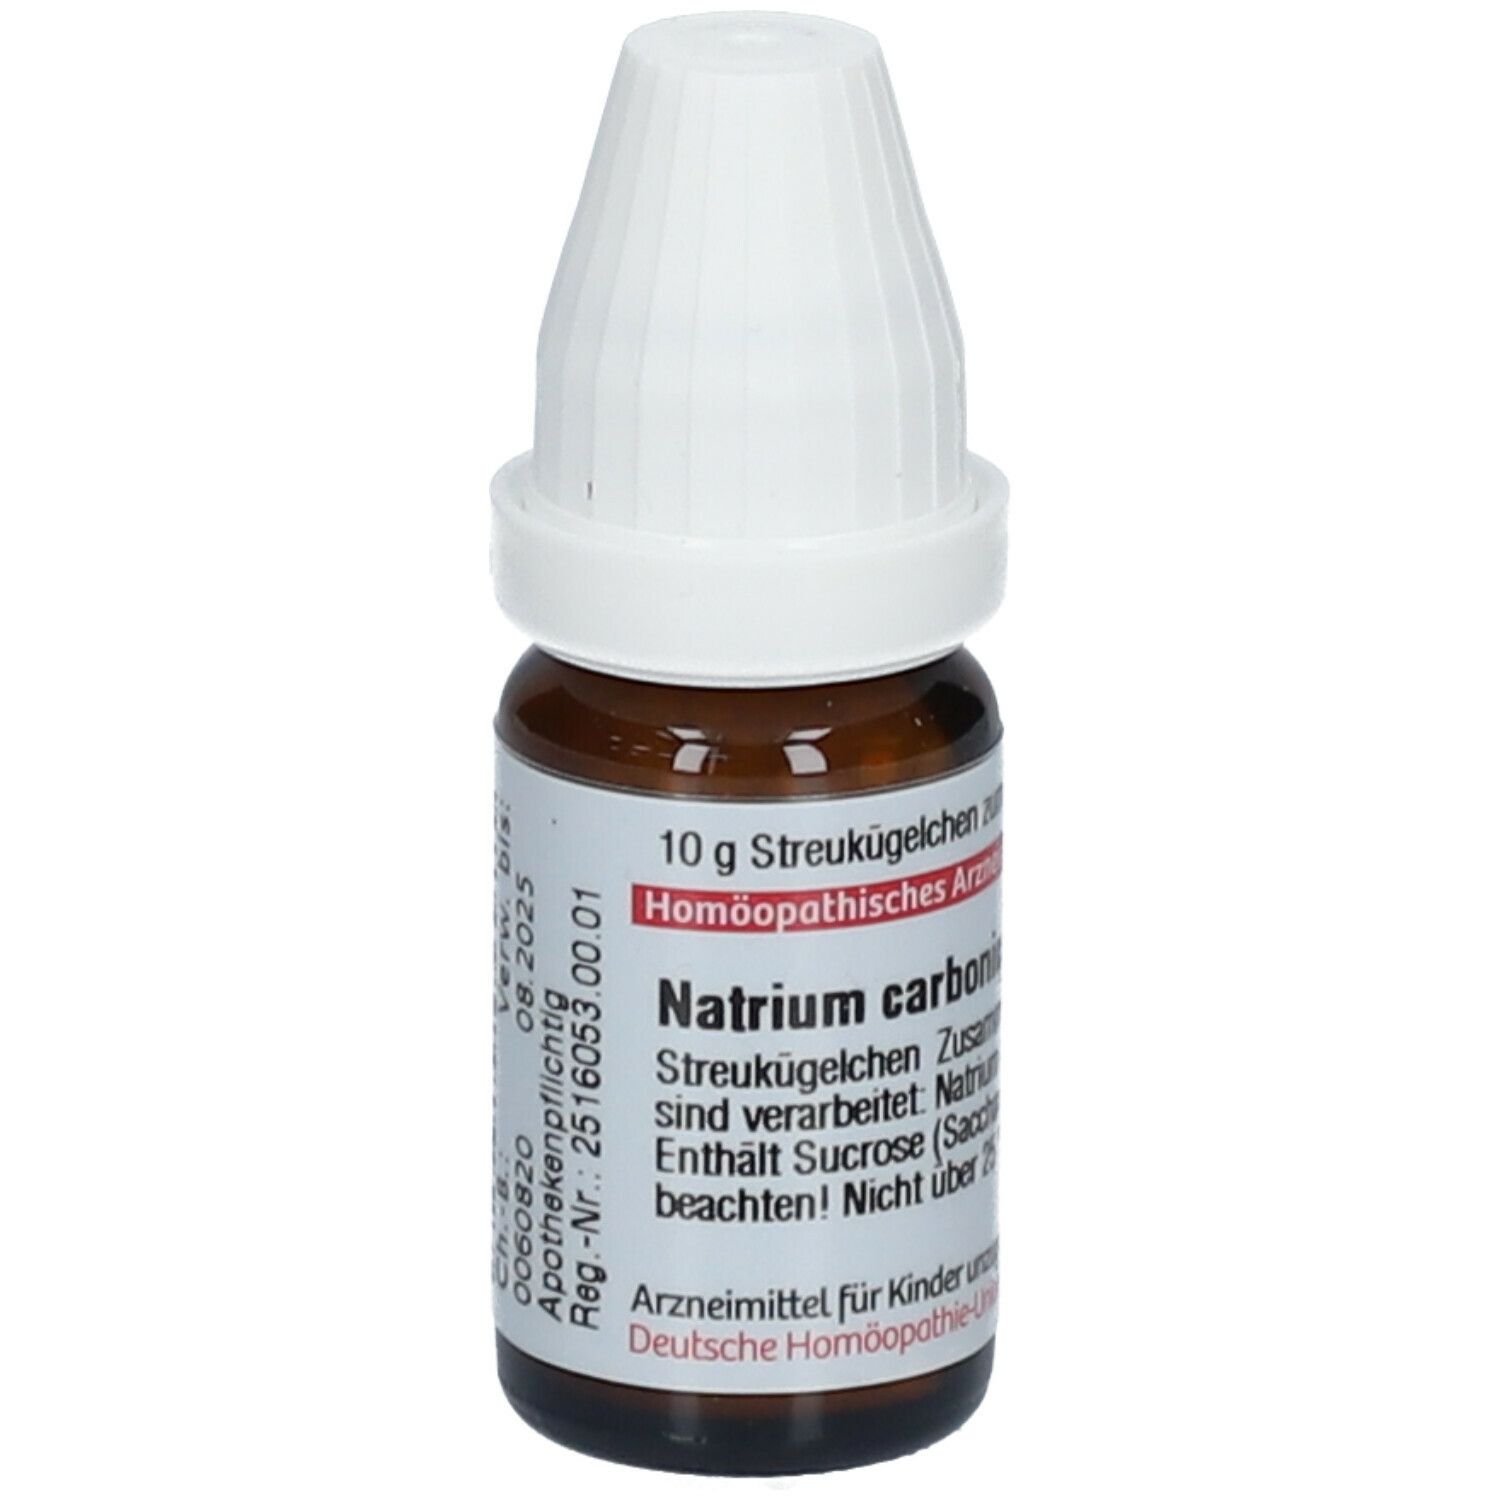 DHU Natrium Carbonicum C1000